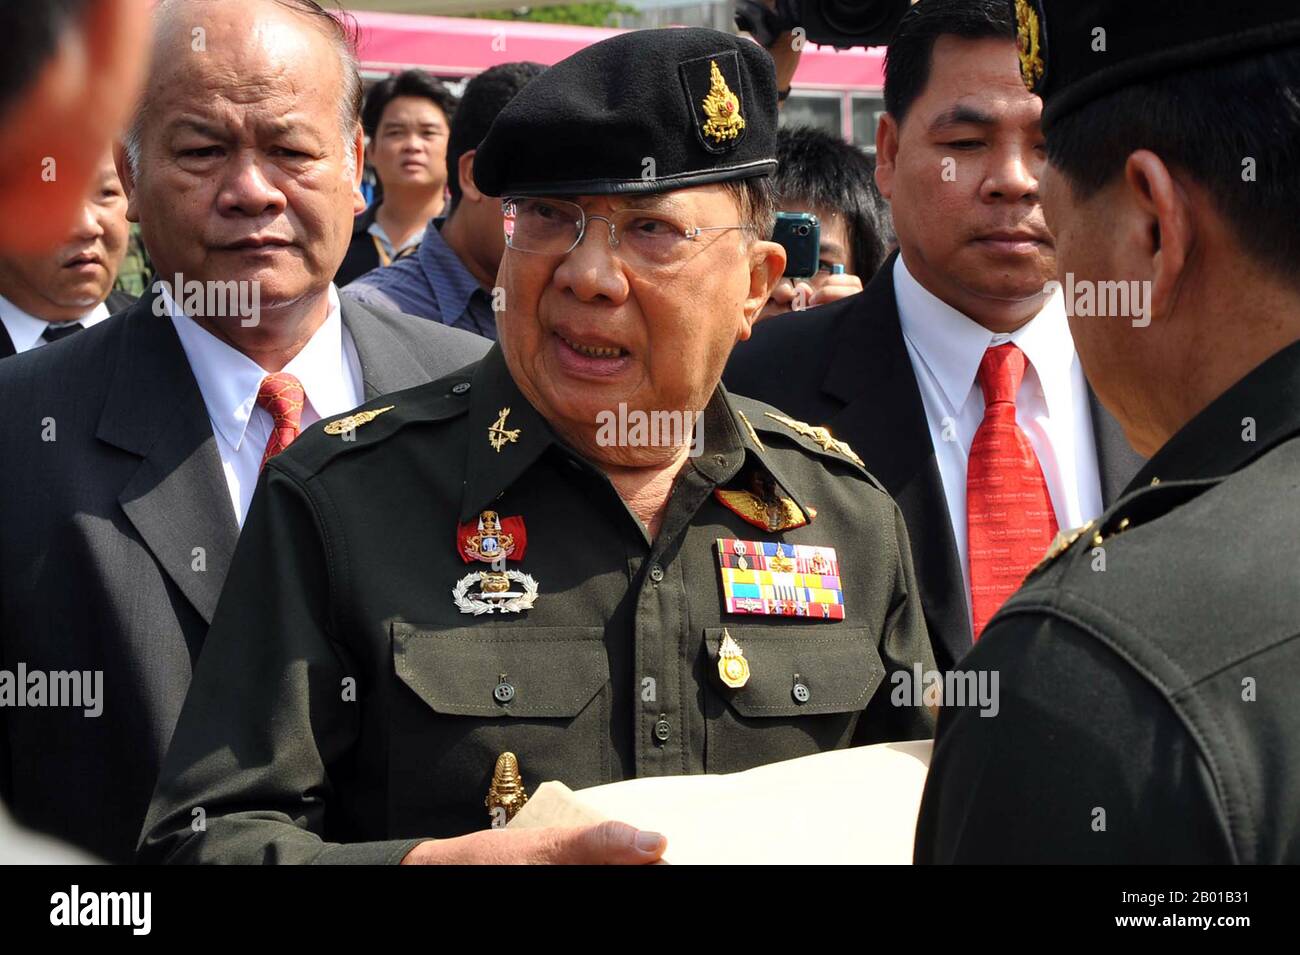 Tailandia: General Chavalit Yongchaiyudh (1932 -), Primer Ministro de Tailandia (r. 1996-1997). Foto de Peerapat Wimonrangkarat/Govt. De Tailandia, 2010. El General Chavalit Yongchaiyudh, también conocido como ''Gran Jiew'' es un político tailandés y general retirado. Fue el 22nd Primer Ministro de Tailandia de 1996 a 1997. Es de ascendencia sinotailandesa y de etnia lao. Chavalit comenzó su carrera política en 1988 en la administración de Chatichai Choonhavan. Su Nuevo Partido de Aspiración ganó la mayoría de los escaños en las elecciones de 1996 y se convirtió en Primer Ministro, pero la crisis financiera asiática de 1997 lo obligó a dimitir. Foto de stock